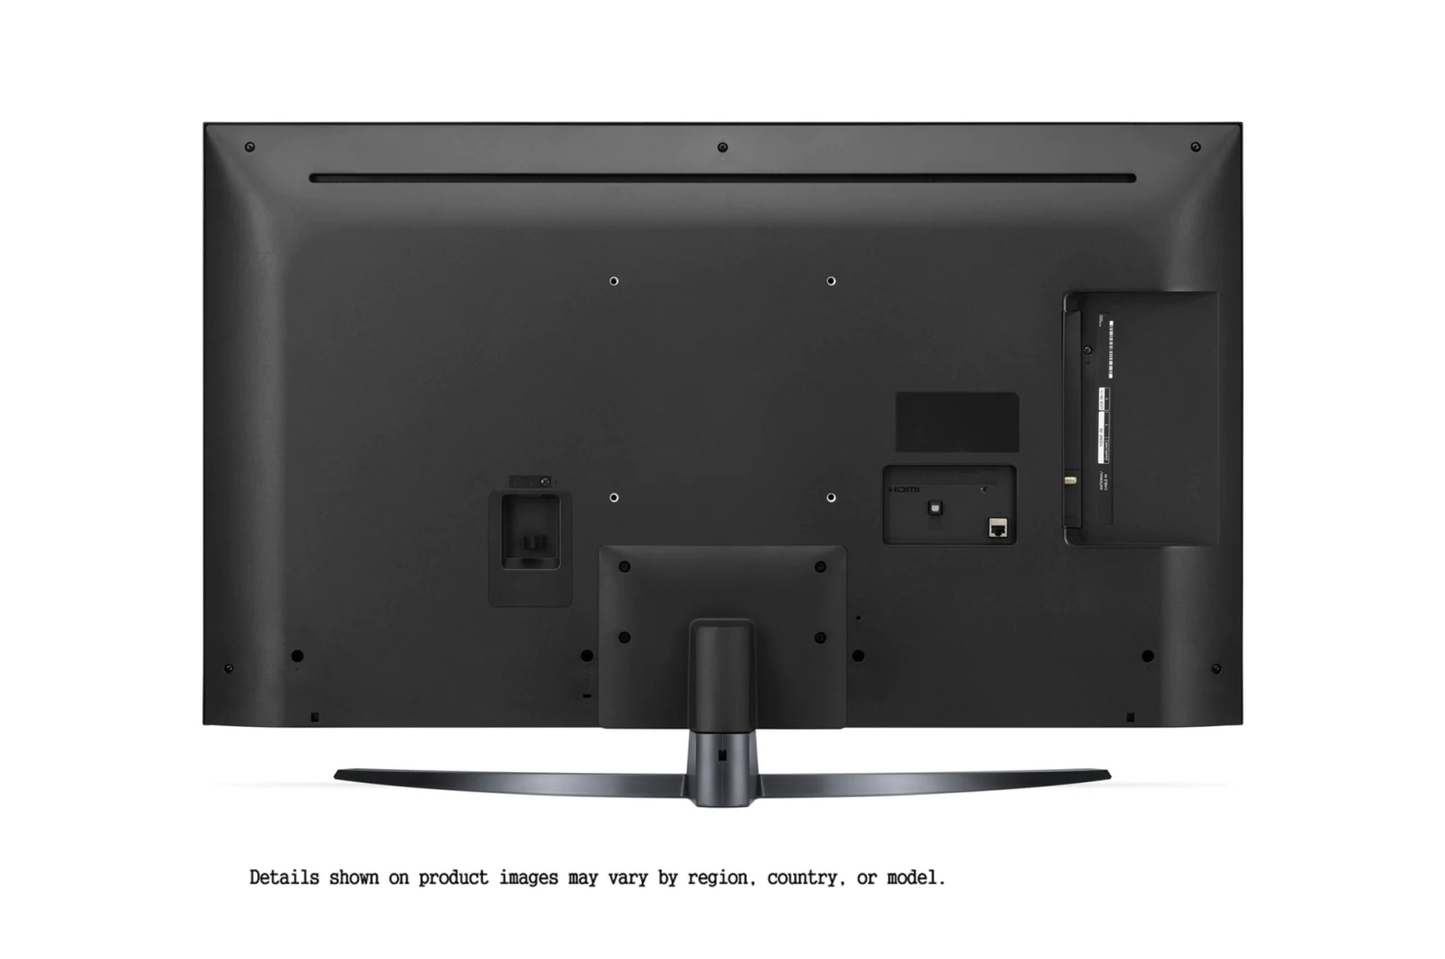 LG - 65吋 65UP7800PCB 4K 智能電視 香港行貨 (包座檯安裝) - Open Box (9成新)